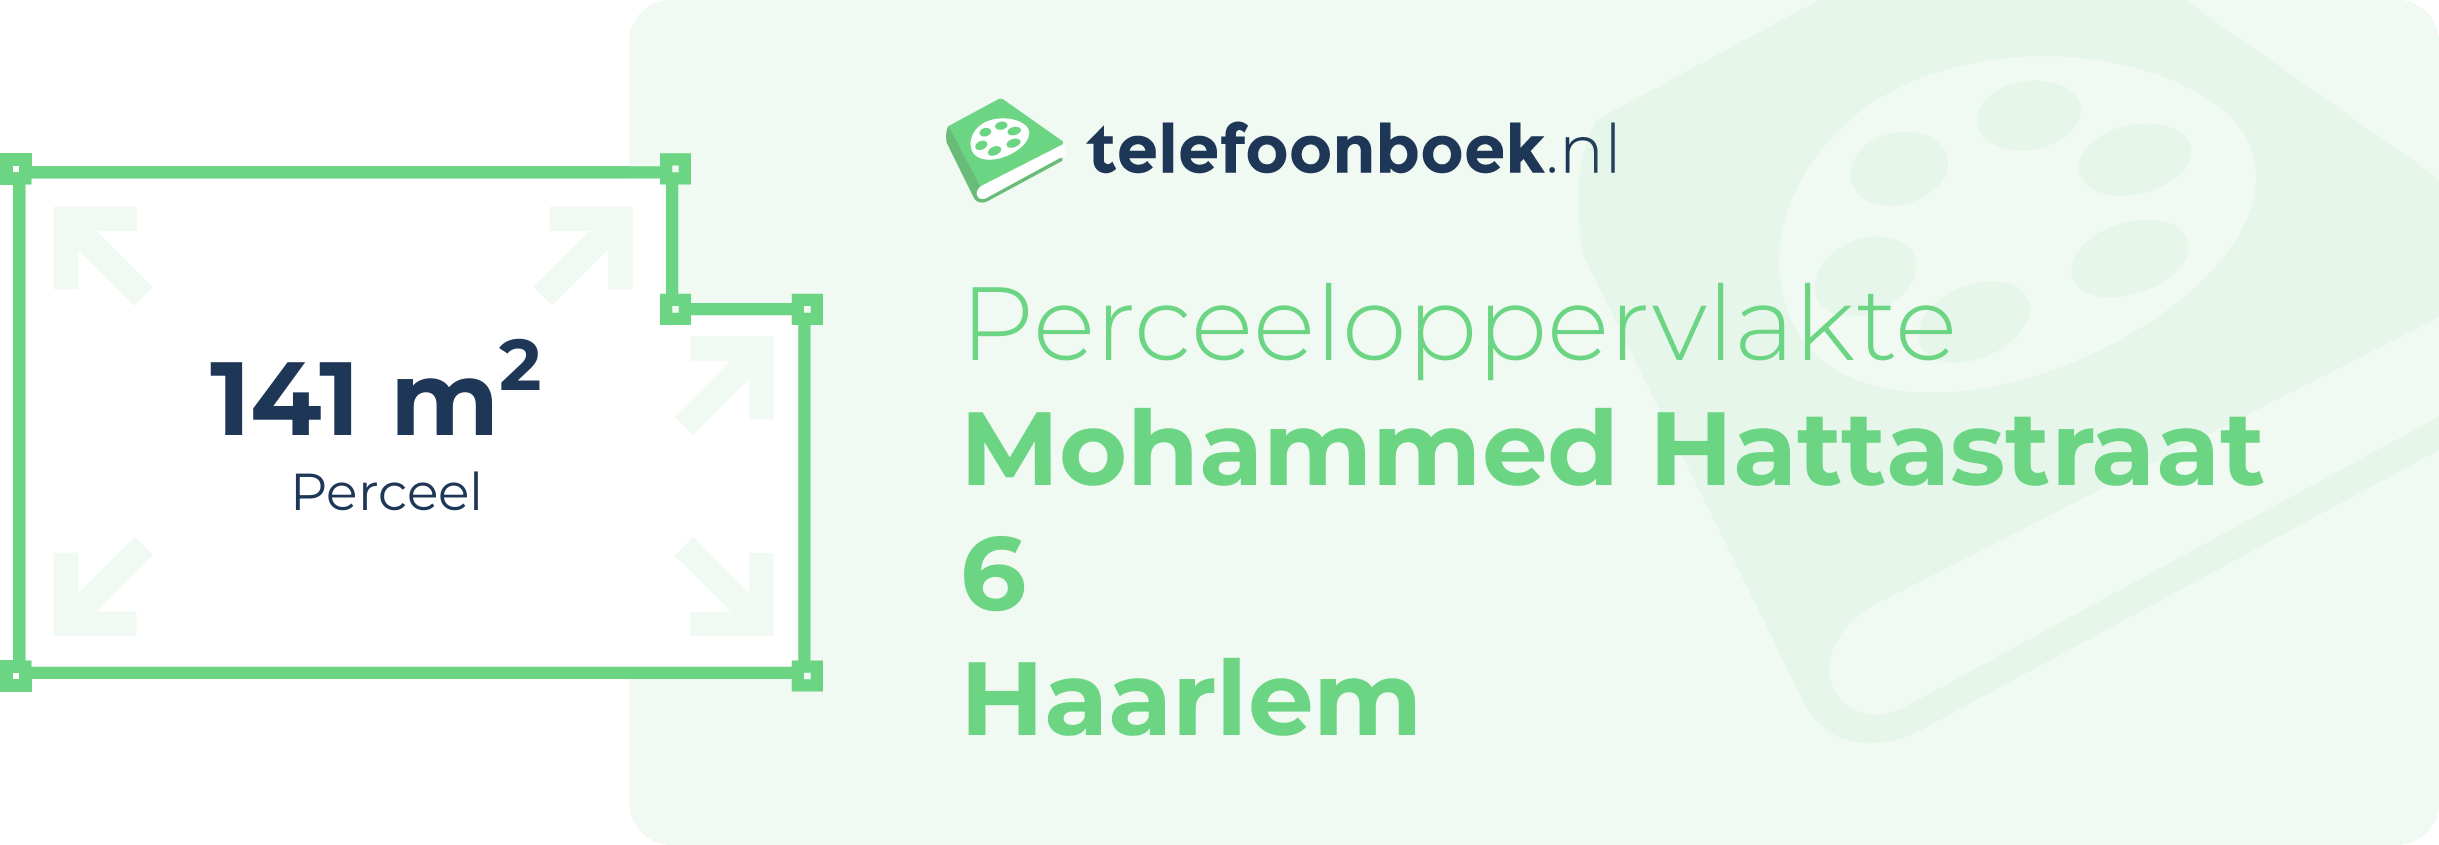 Perceeloppervlakte Mohammed Hattastraat 6 Haarlem